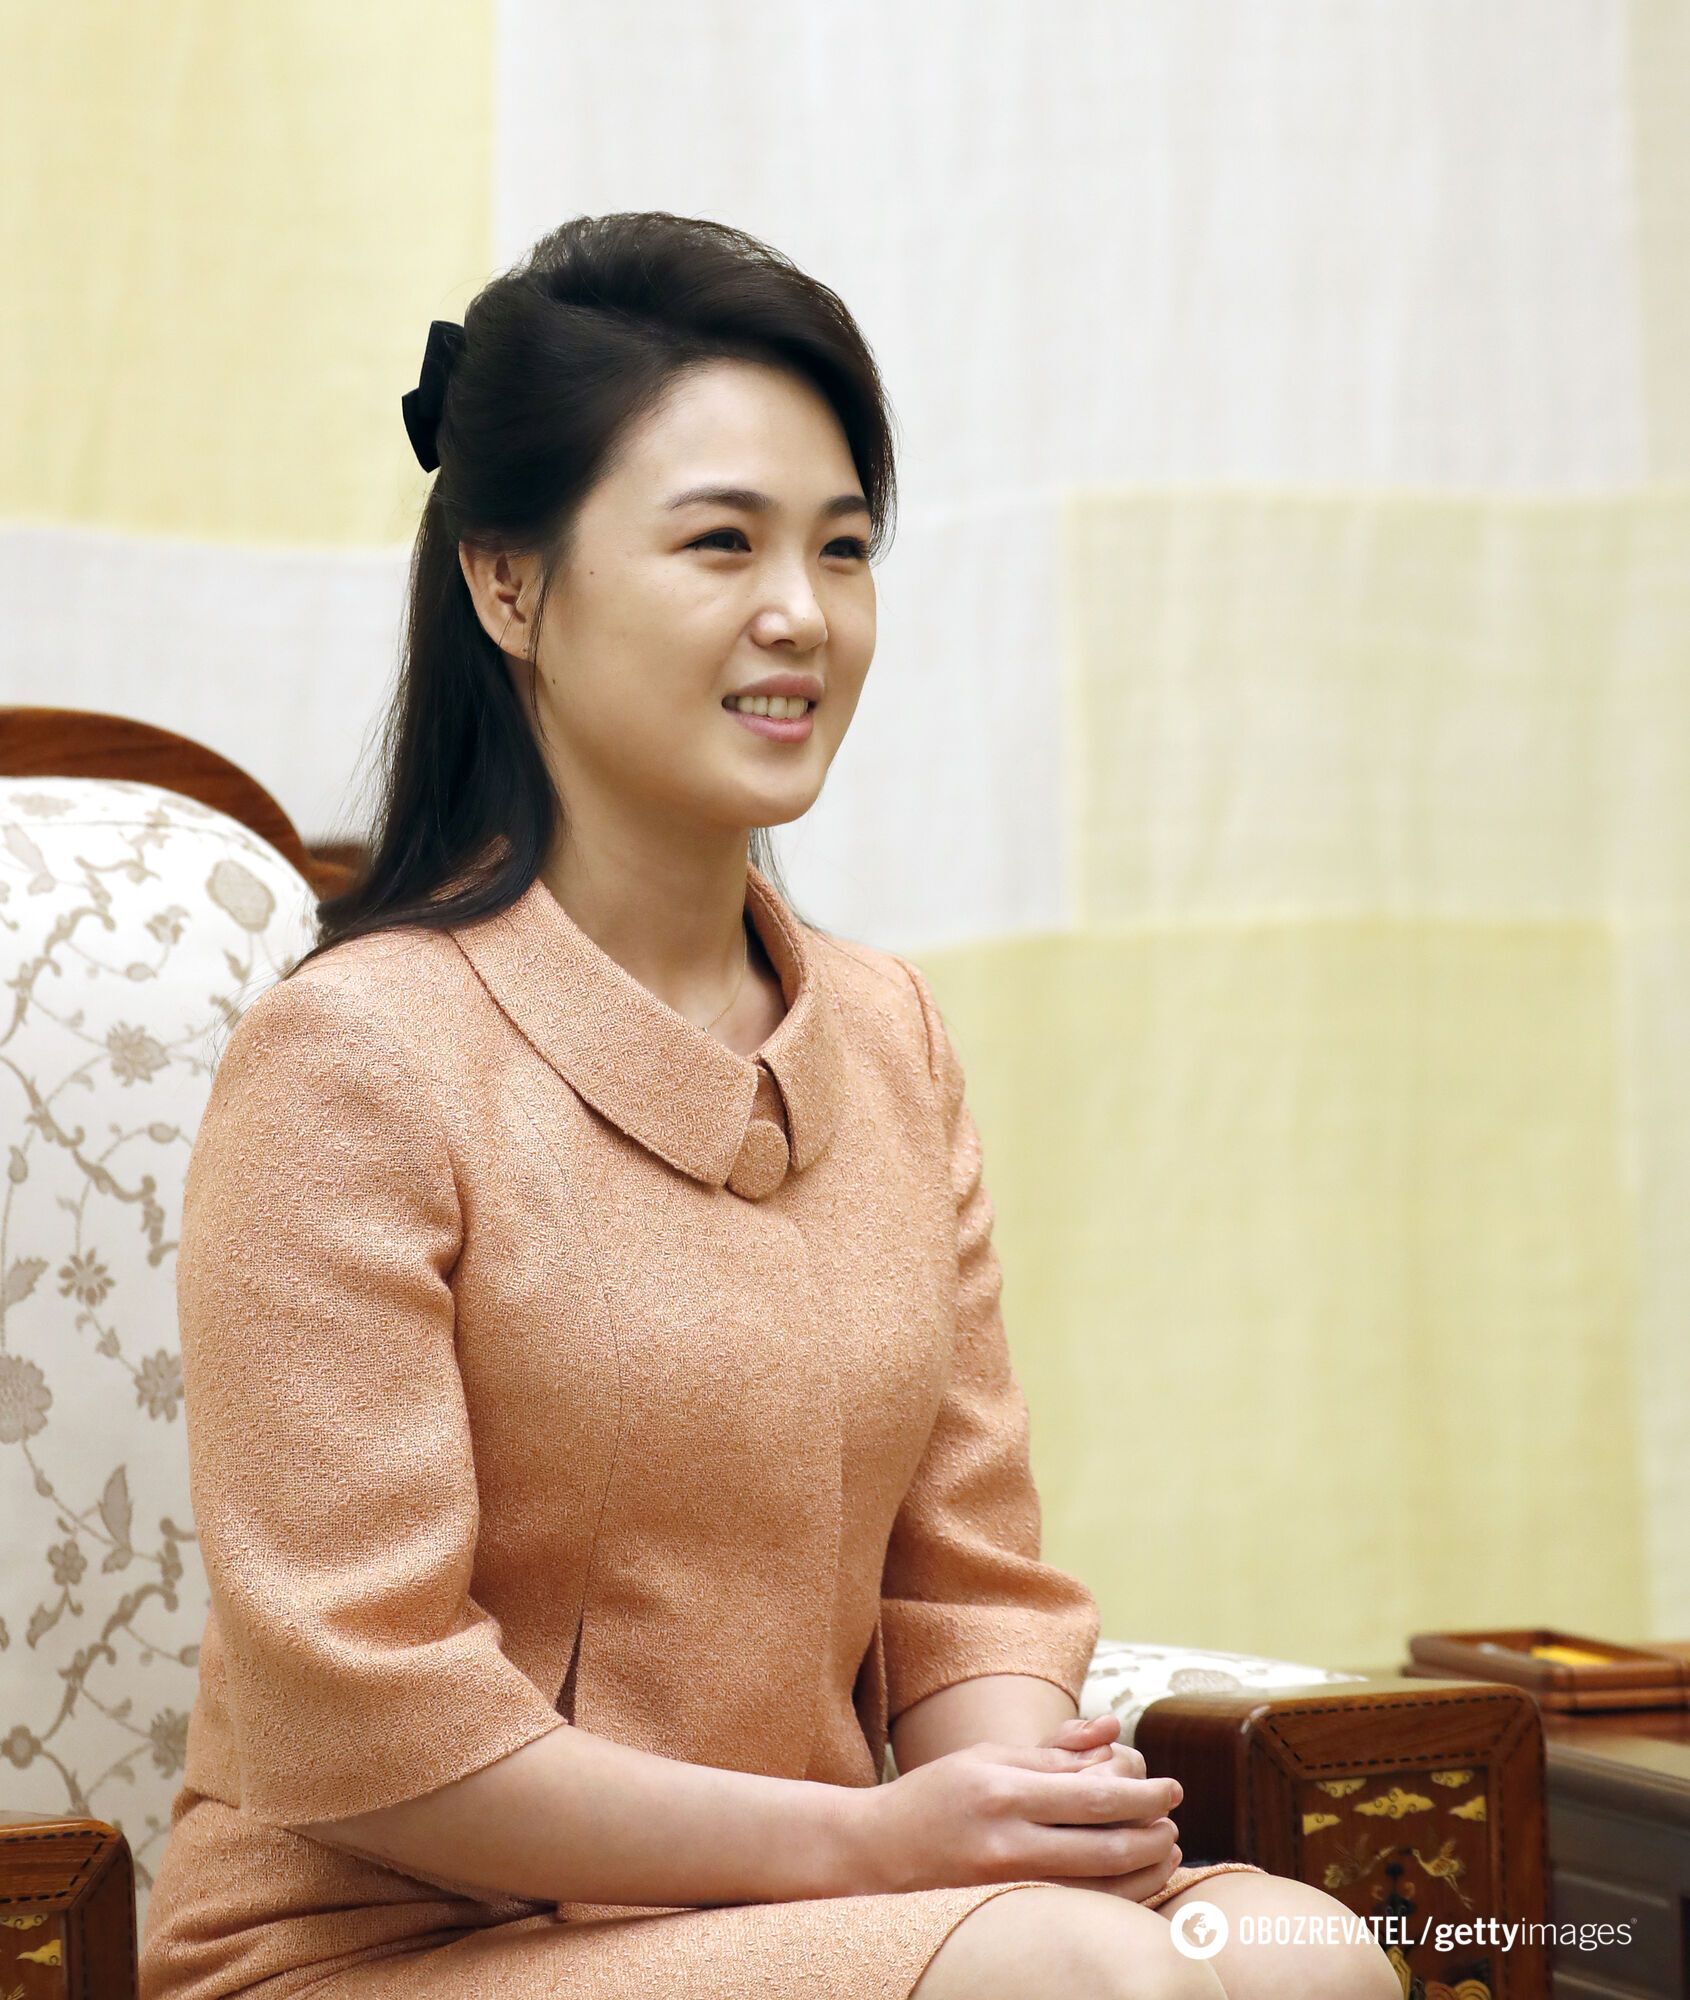 Дружина носить Dior і Chanel, а дочку готують у лідери КНДР: що приховує "божевільний диктатор" Кім Чен Ин